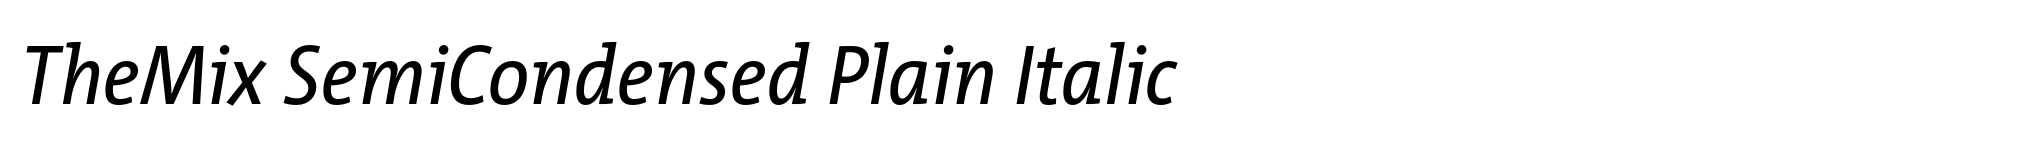 TheMix SemiCondensed Plain Italic image